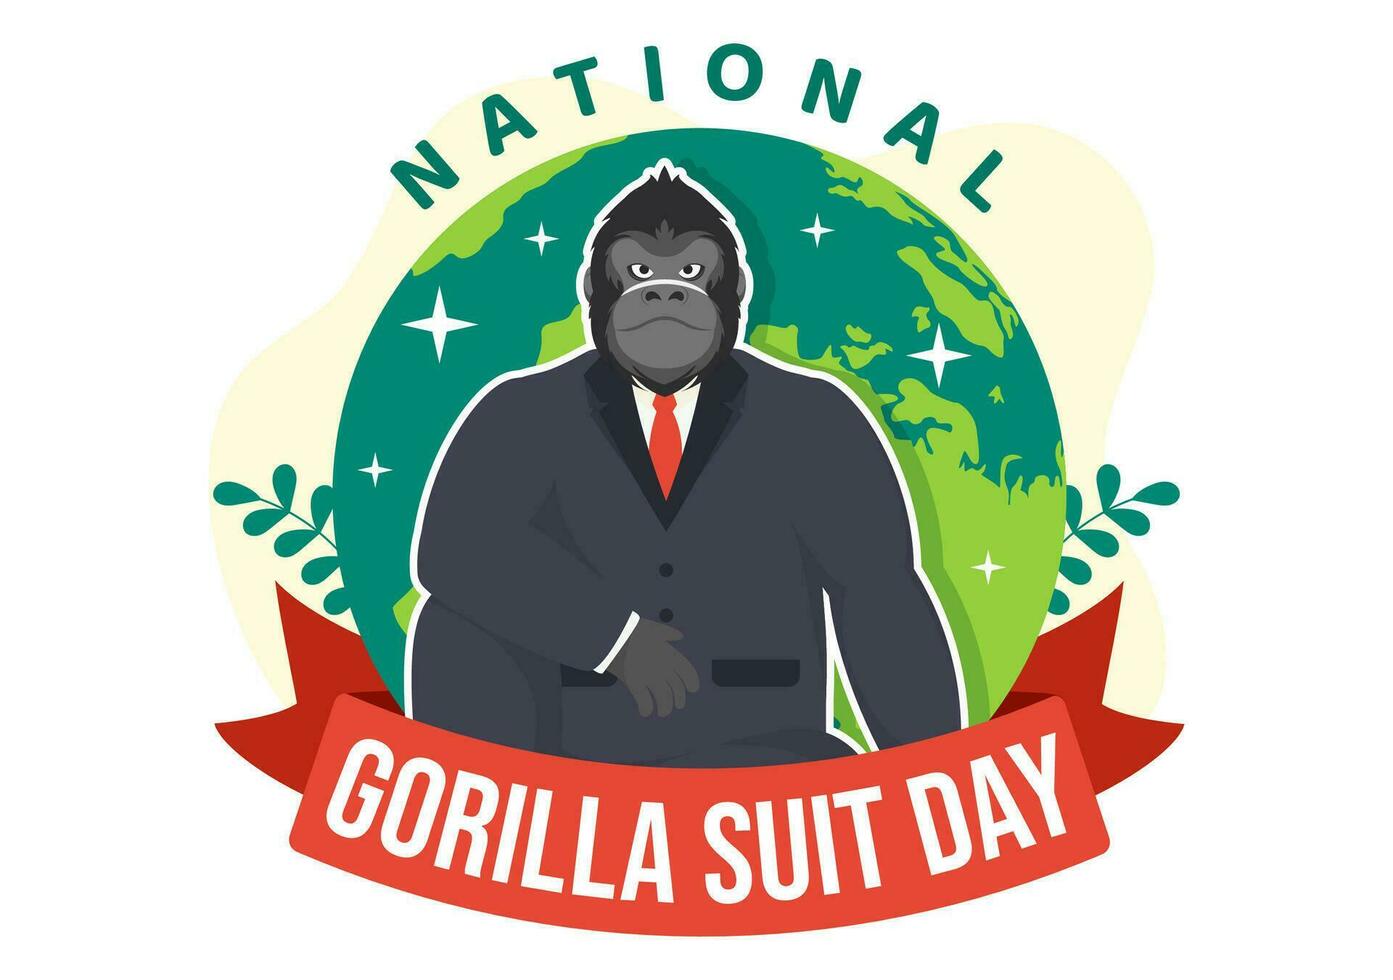 nationell gorilla kostym dag vektor illustration på 31 januari med har de huvud av en gorillor är klädd ordentligt i en kostymer och värld Karta i bakgrund